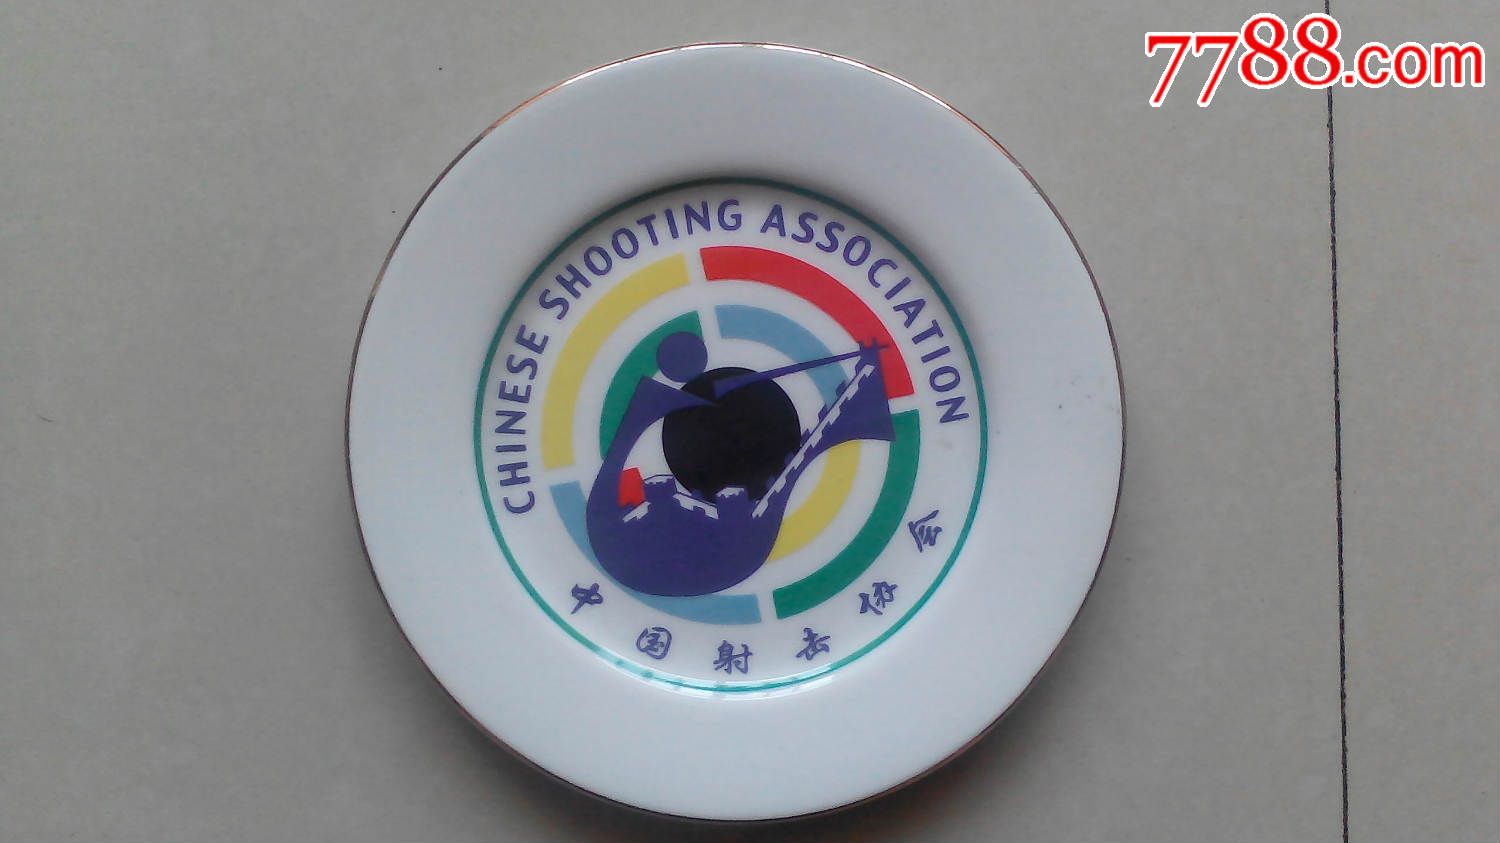 中国射击协会瓷盘瓷盘